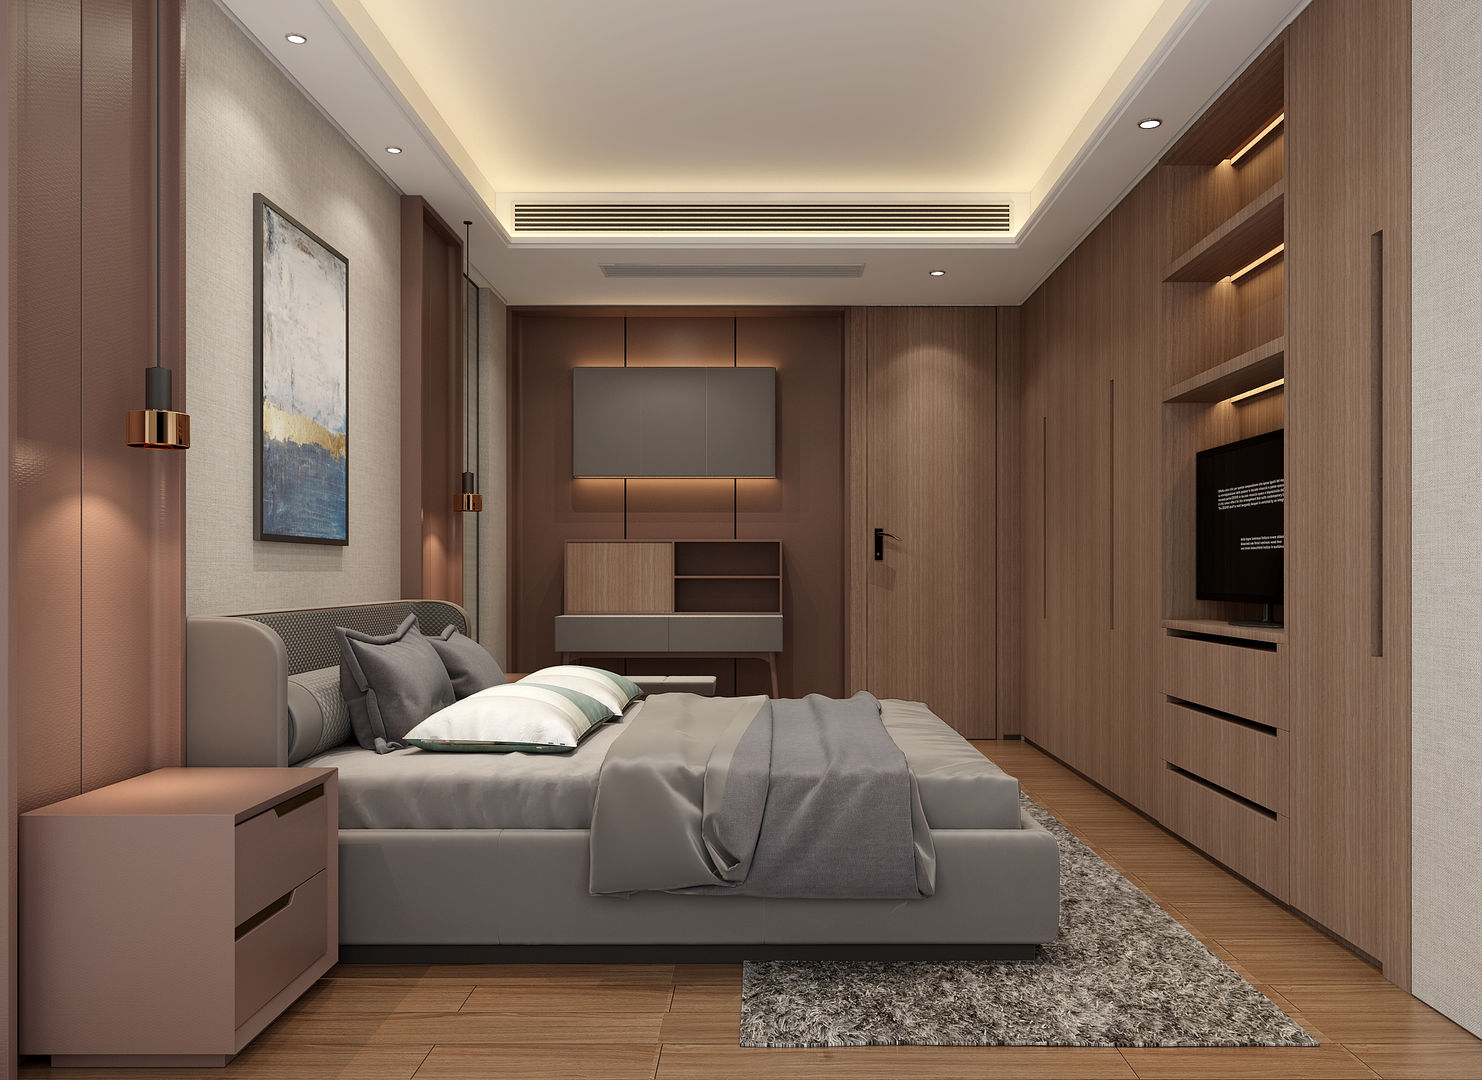 3D示意圖3, VH INTERIOR DESIGN VH INTERIOR DESIGN Dormitorios modernos: Ideas, imágenes y decoración